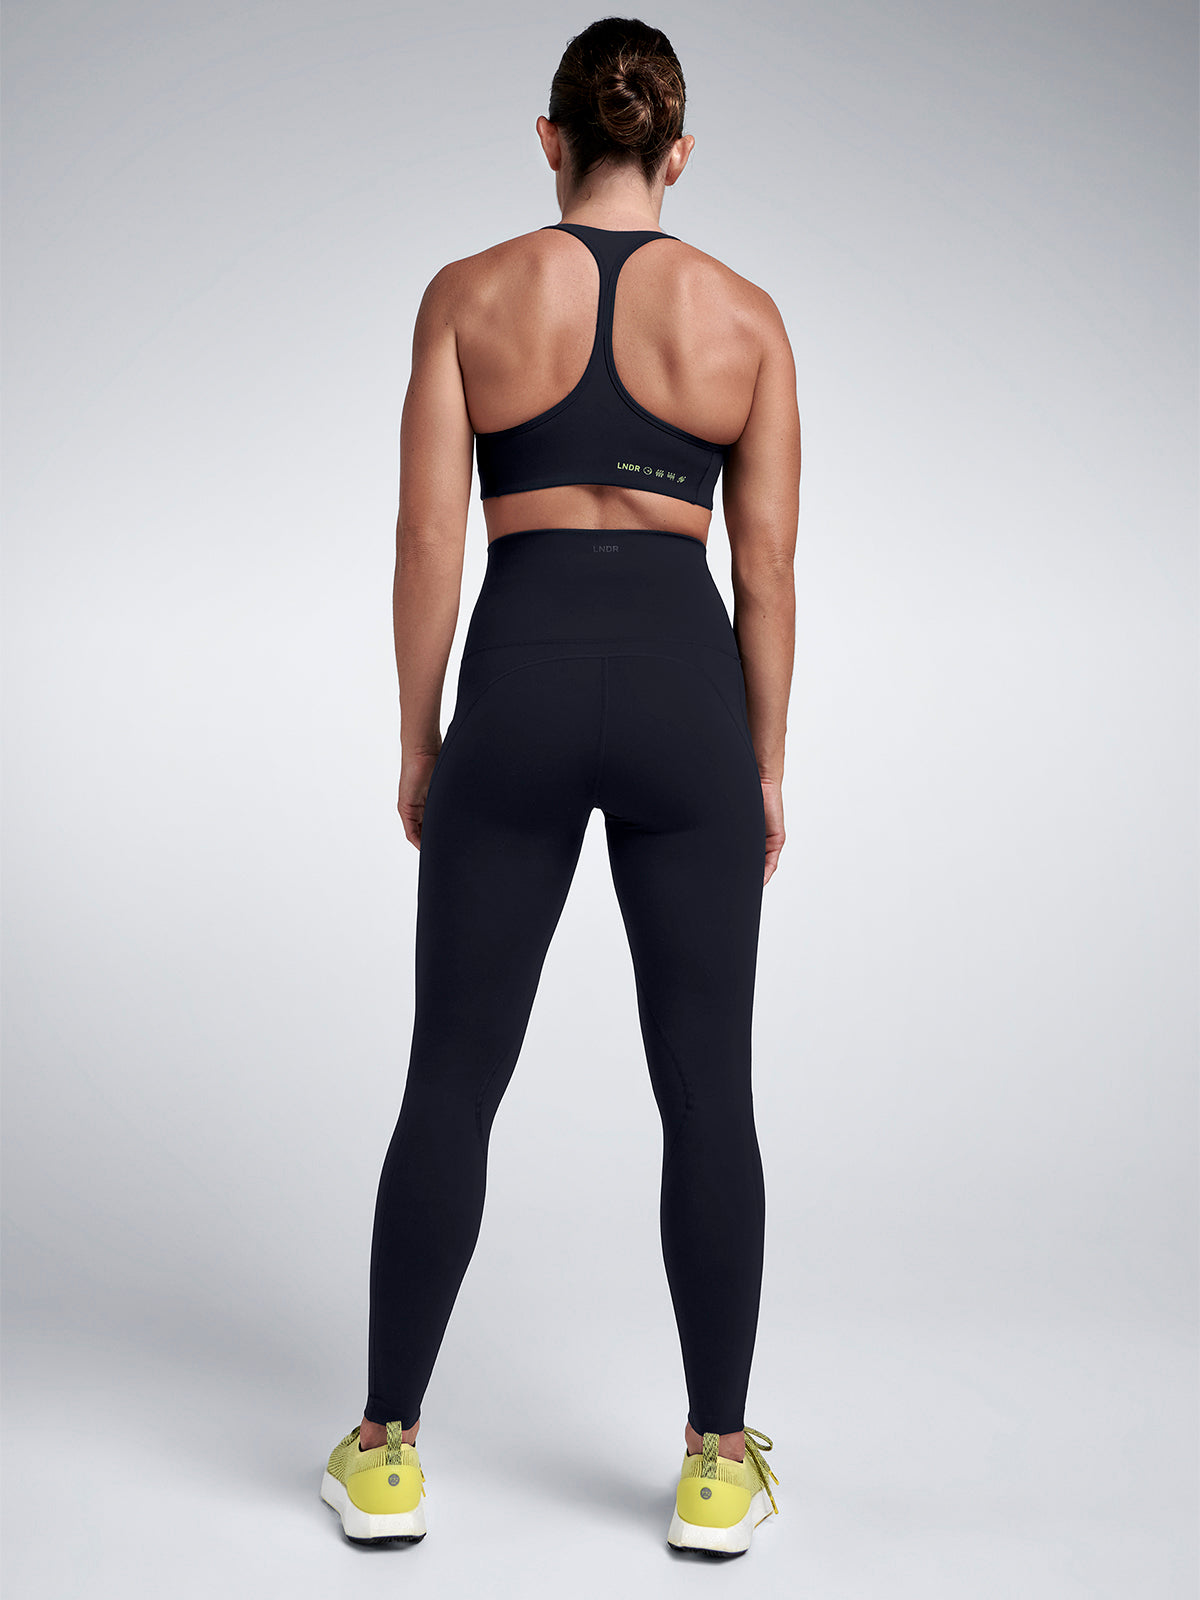 Seamless Bras for Women UK Black Bra Plus Size Navy Gym Bra